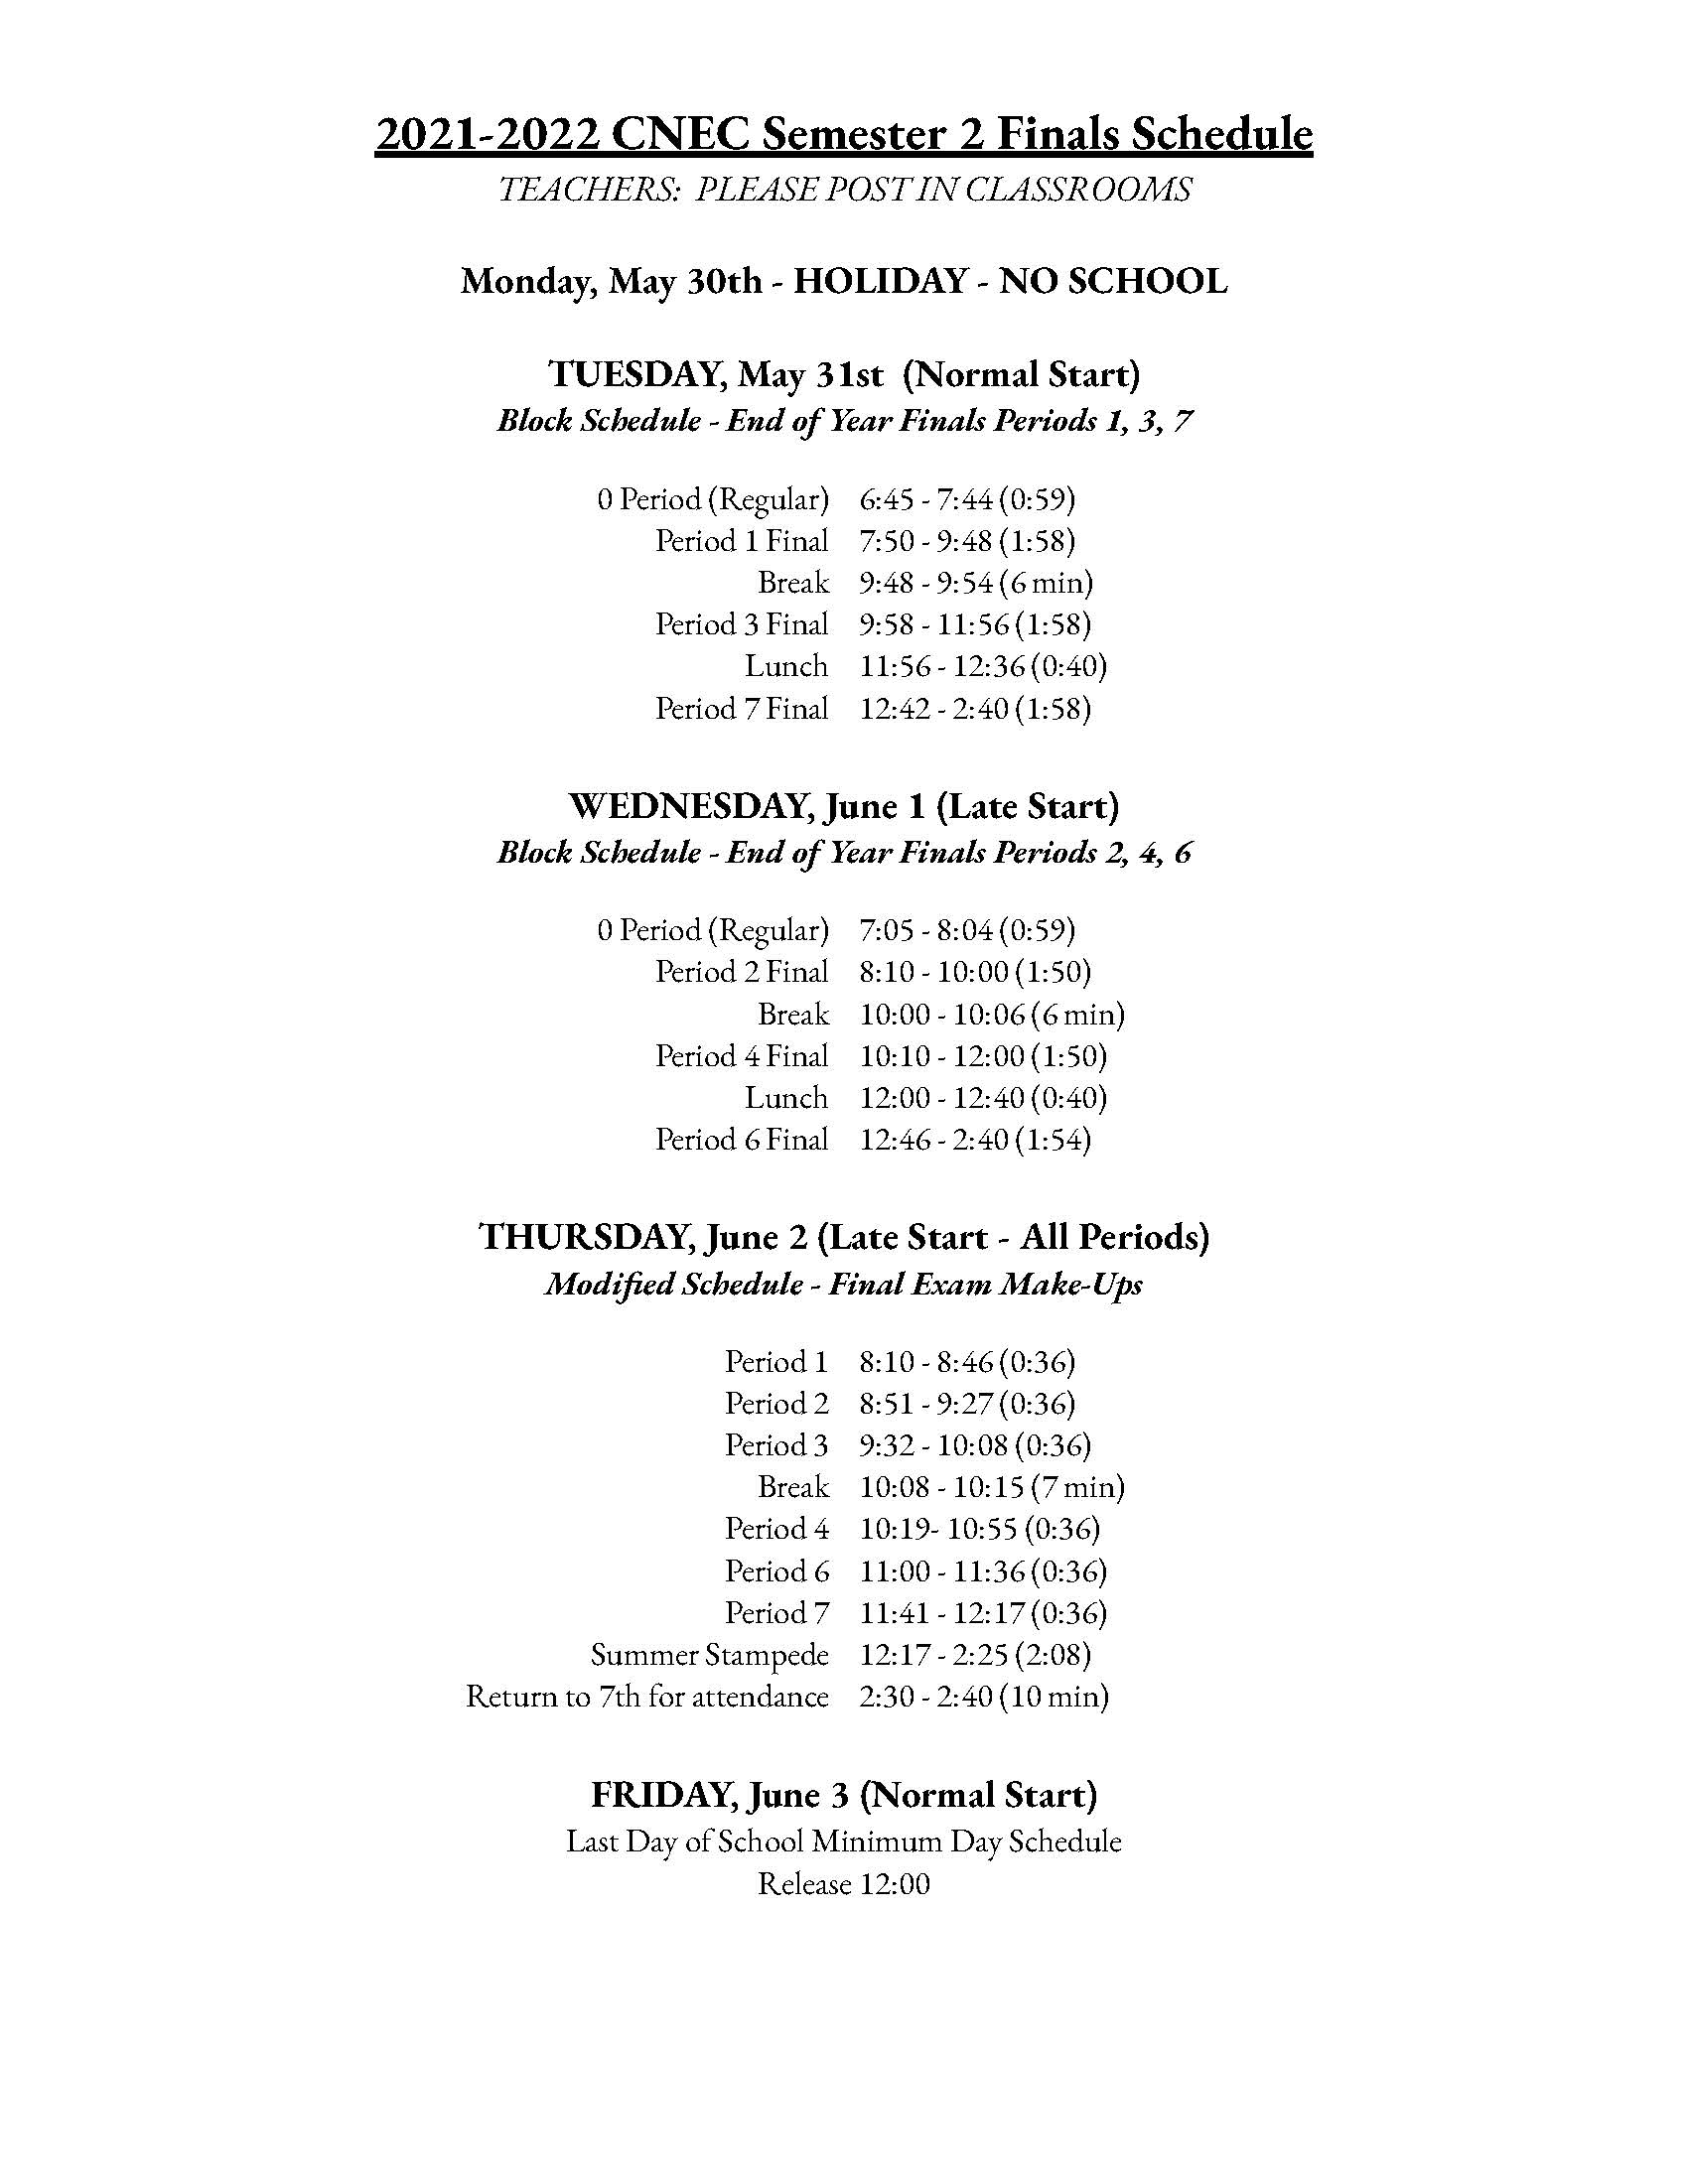 2nd semester finals schedule